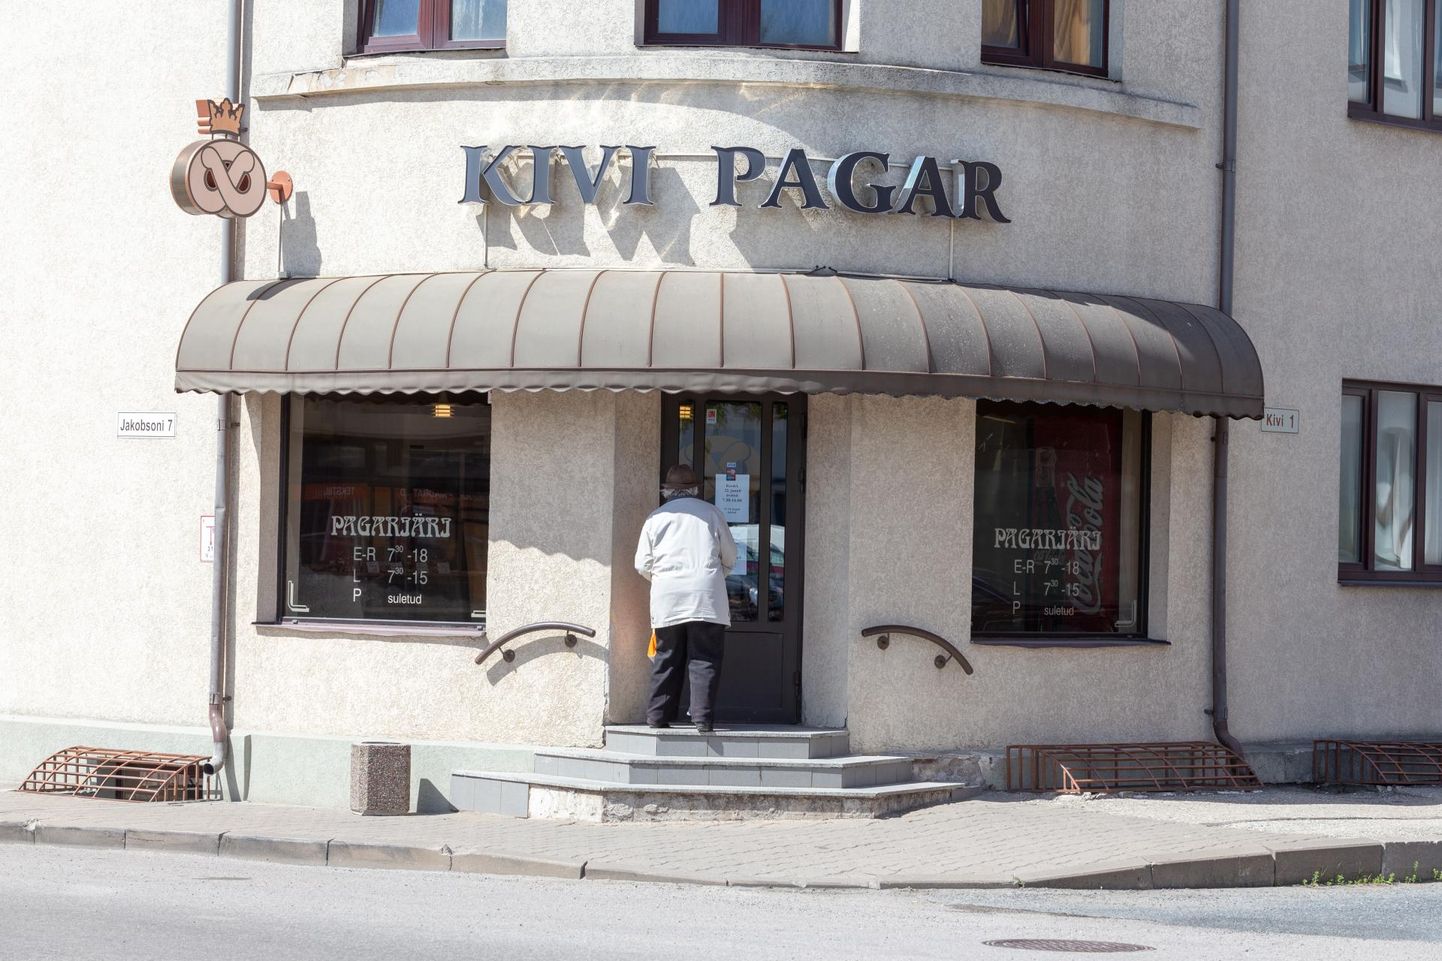 Kivi Pagar sulgeb kaheks nädalaks uksed ja pirukaid sel ajal osta ei saa.